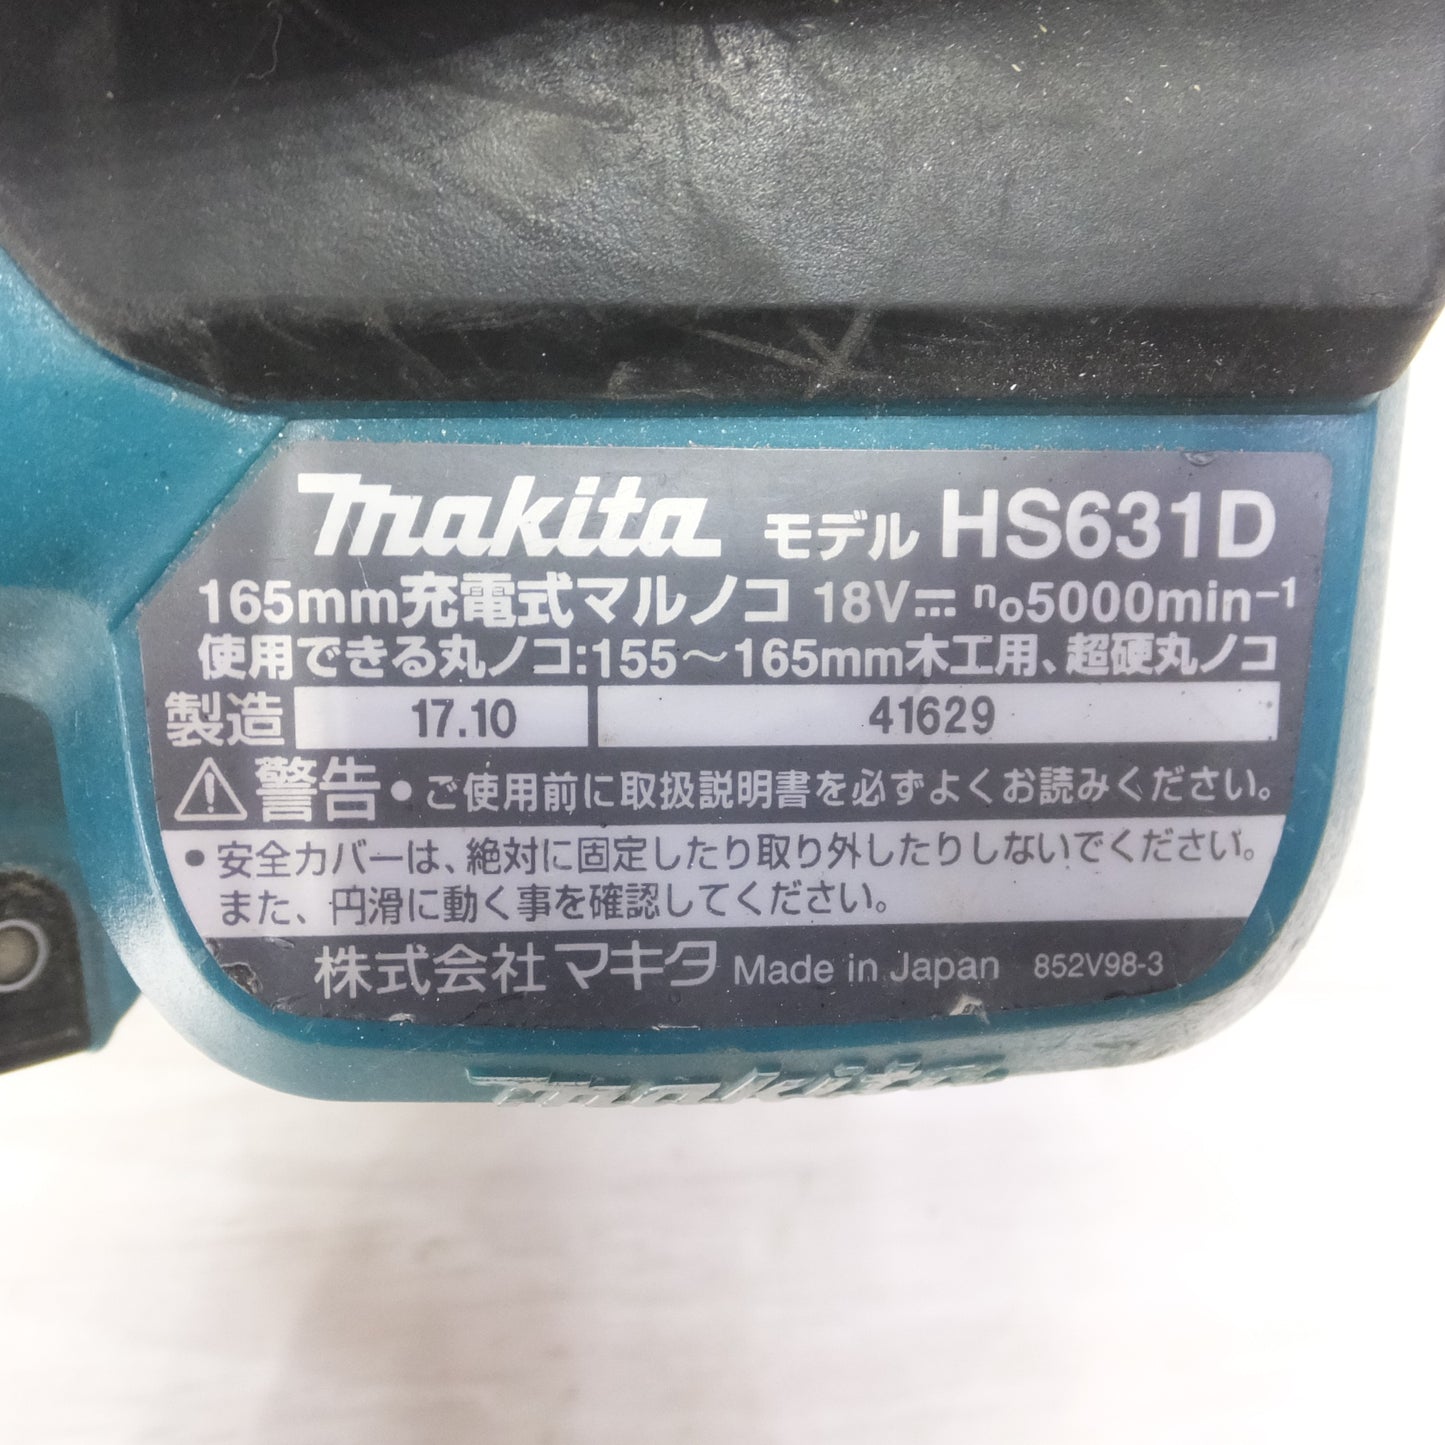 [送料無料] ◆makita マキタ 165mm 充電式マルノコ HS631D 18V 切断機 丸のこ 電動工具 本体のみ◆